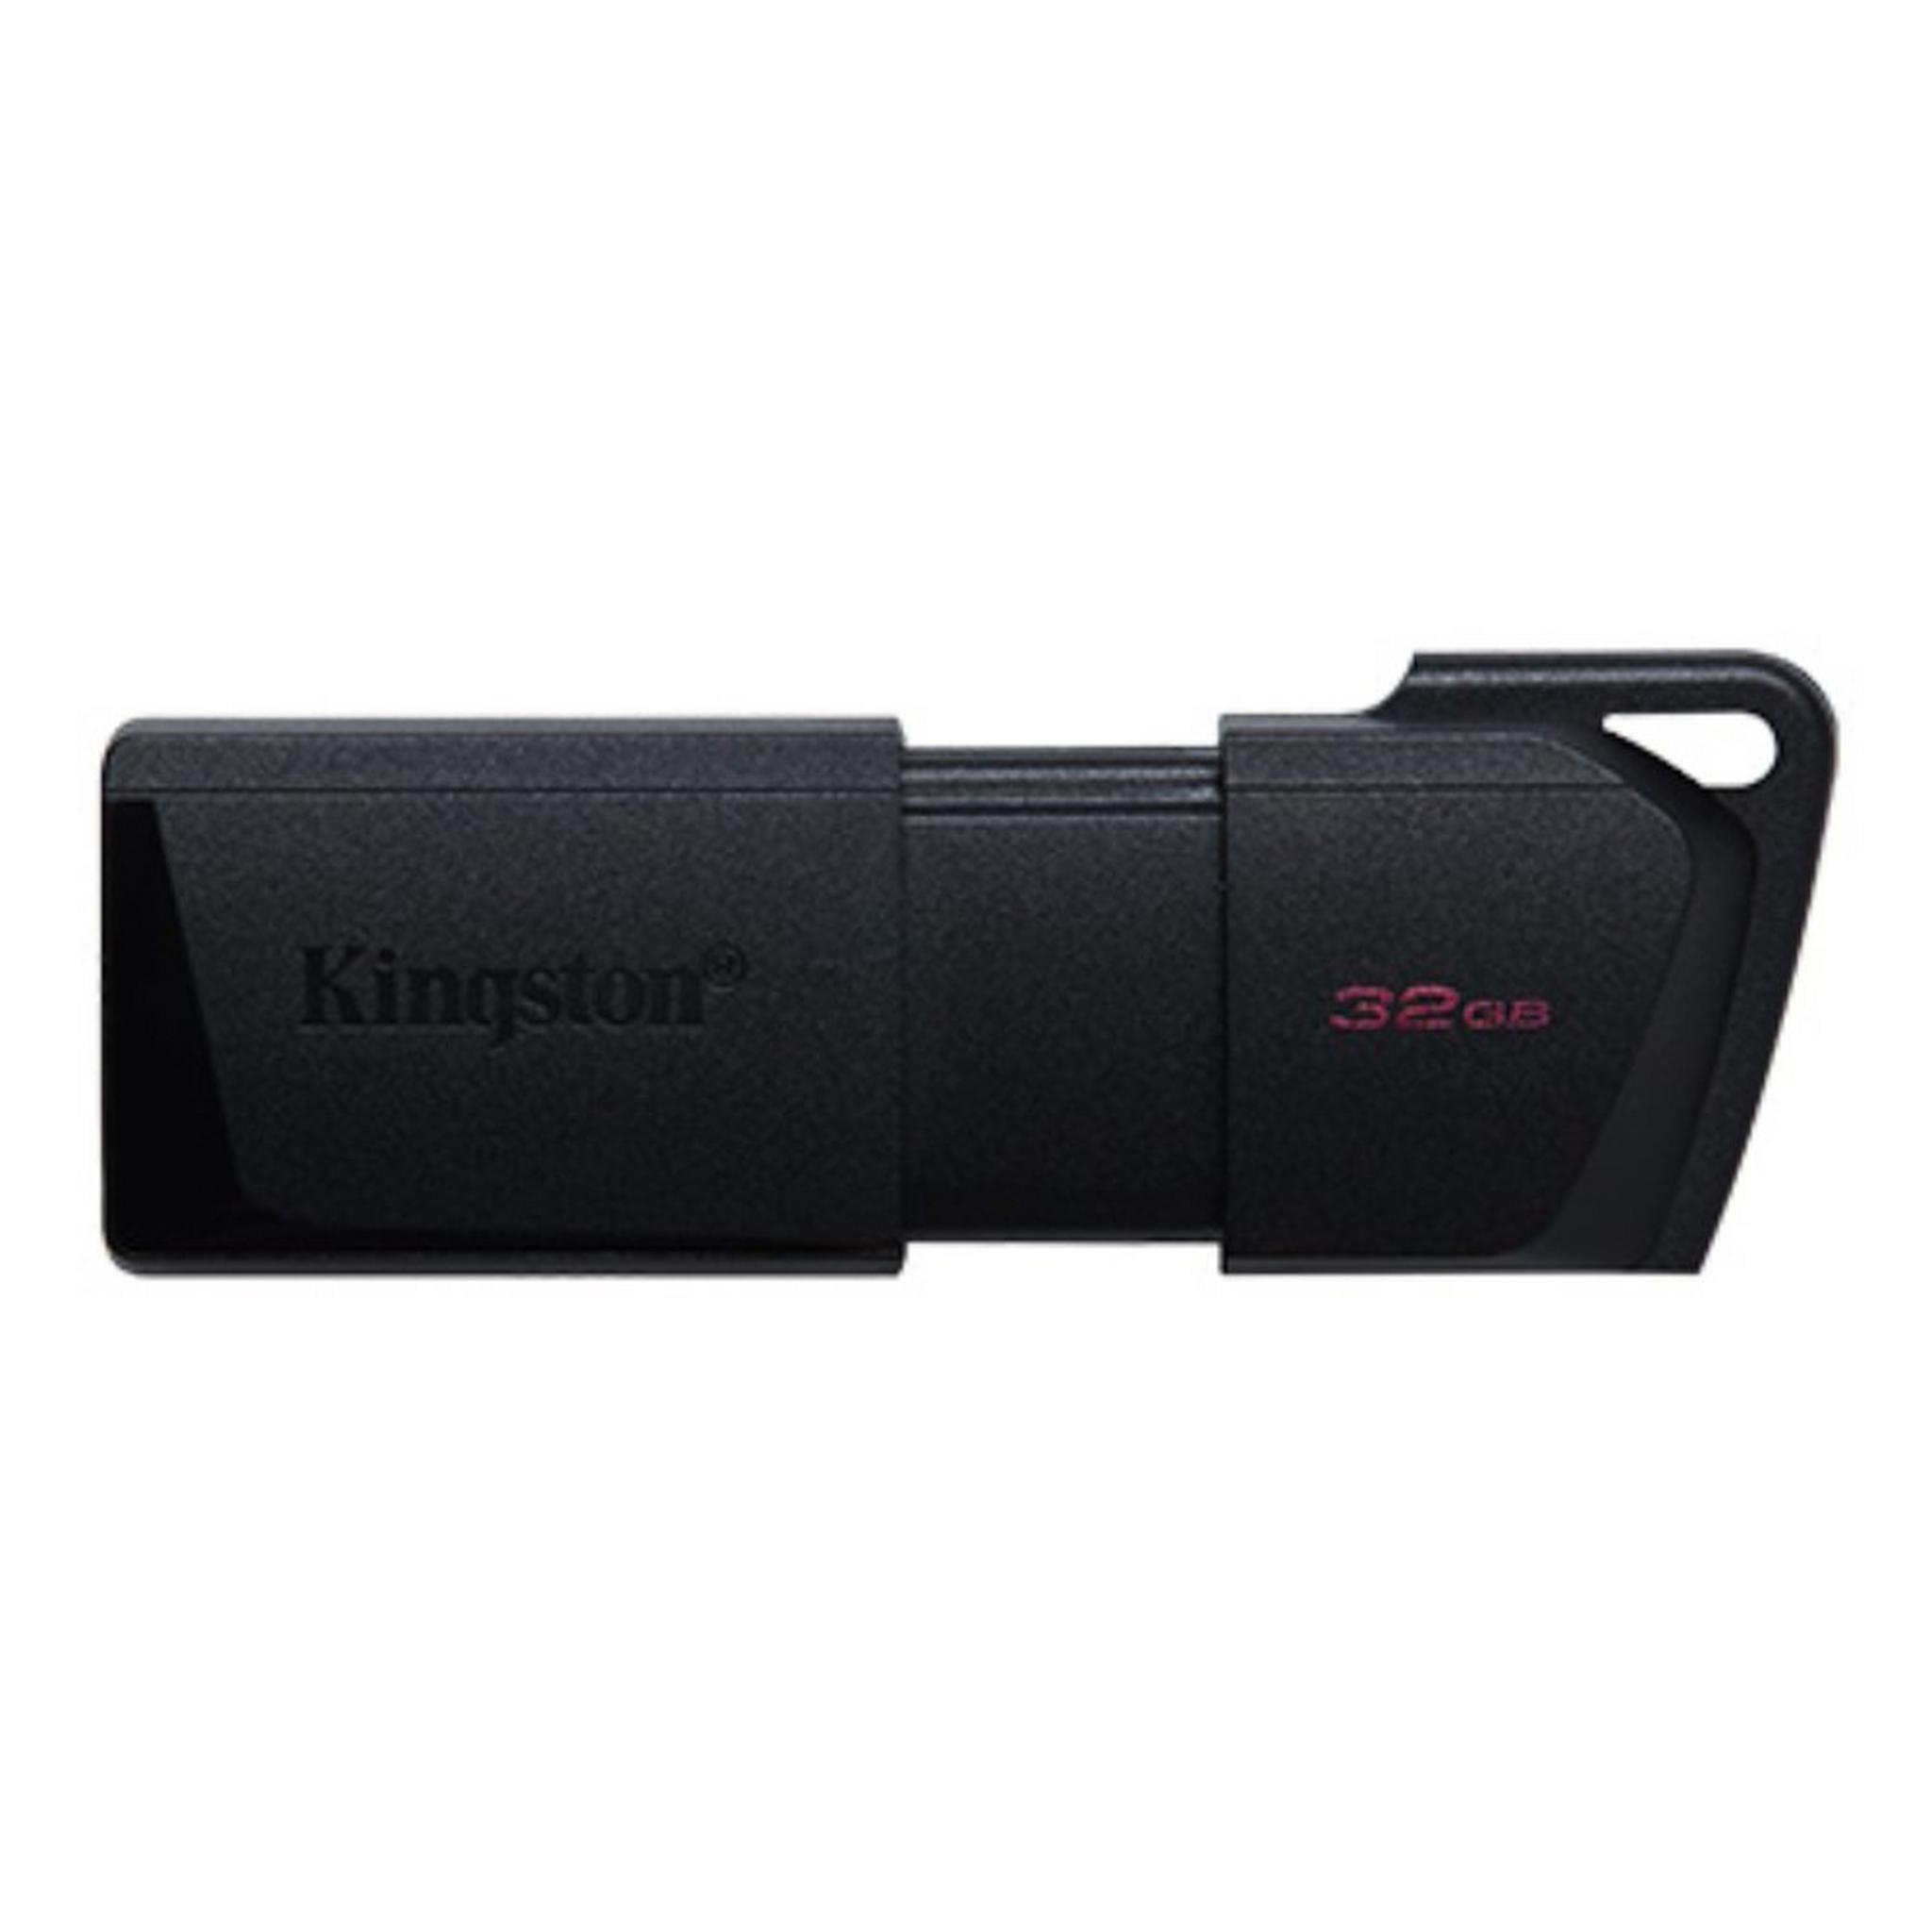 Kingston DataTraveler Exodia M USB flash drive – 32 GB